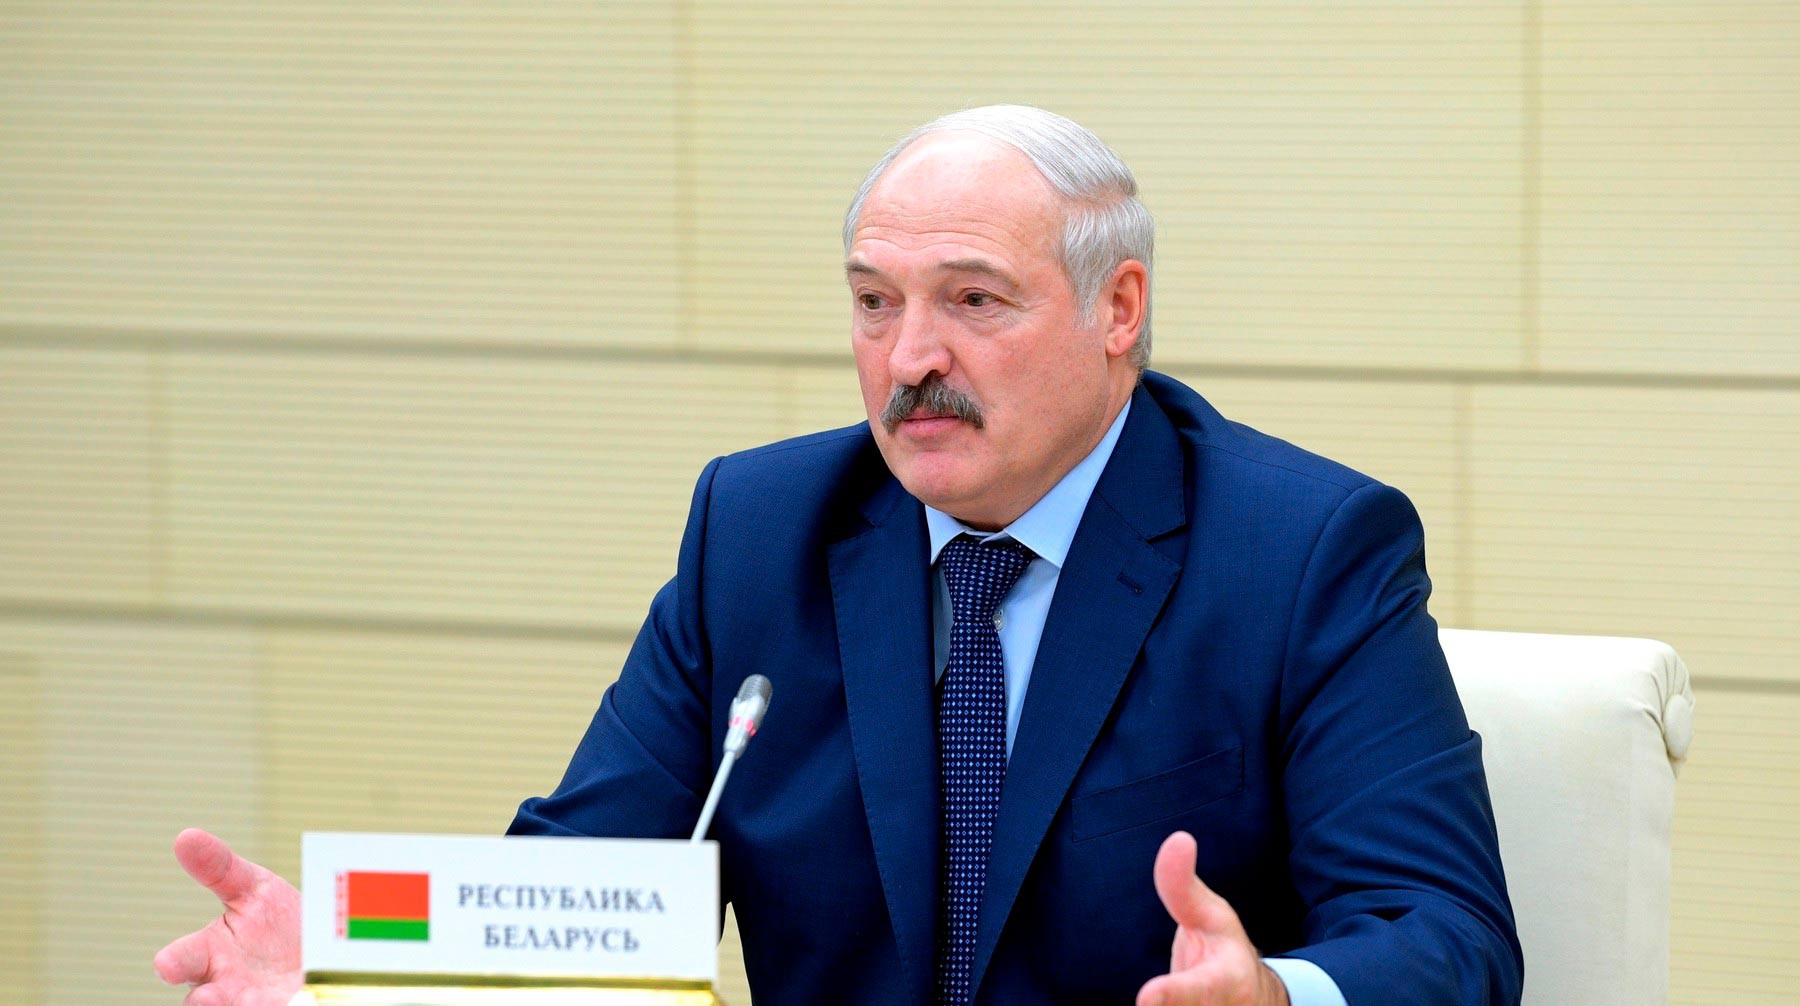 Лукашенко пожаловался на страны, получившие от Господа нефть